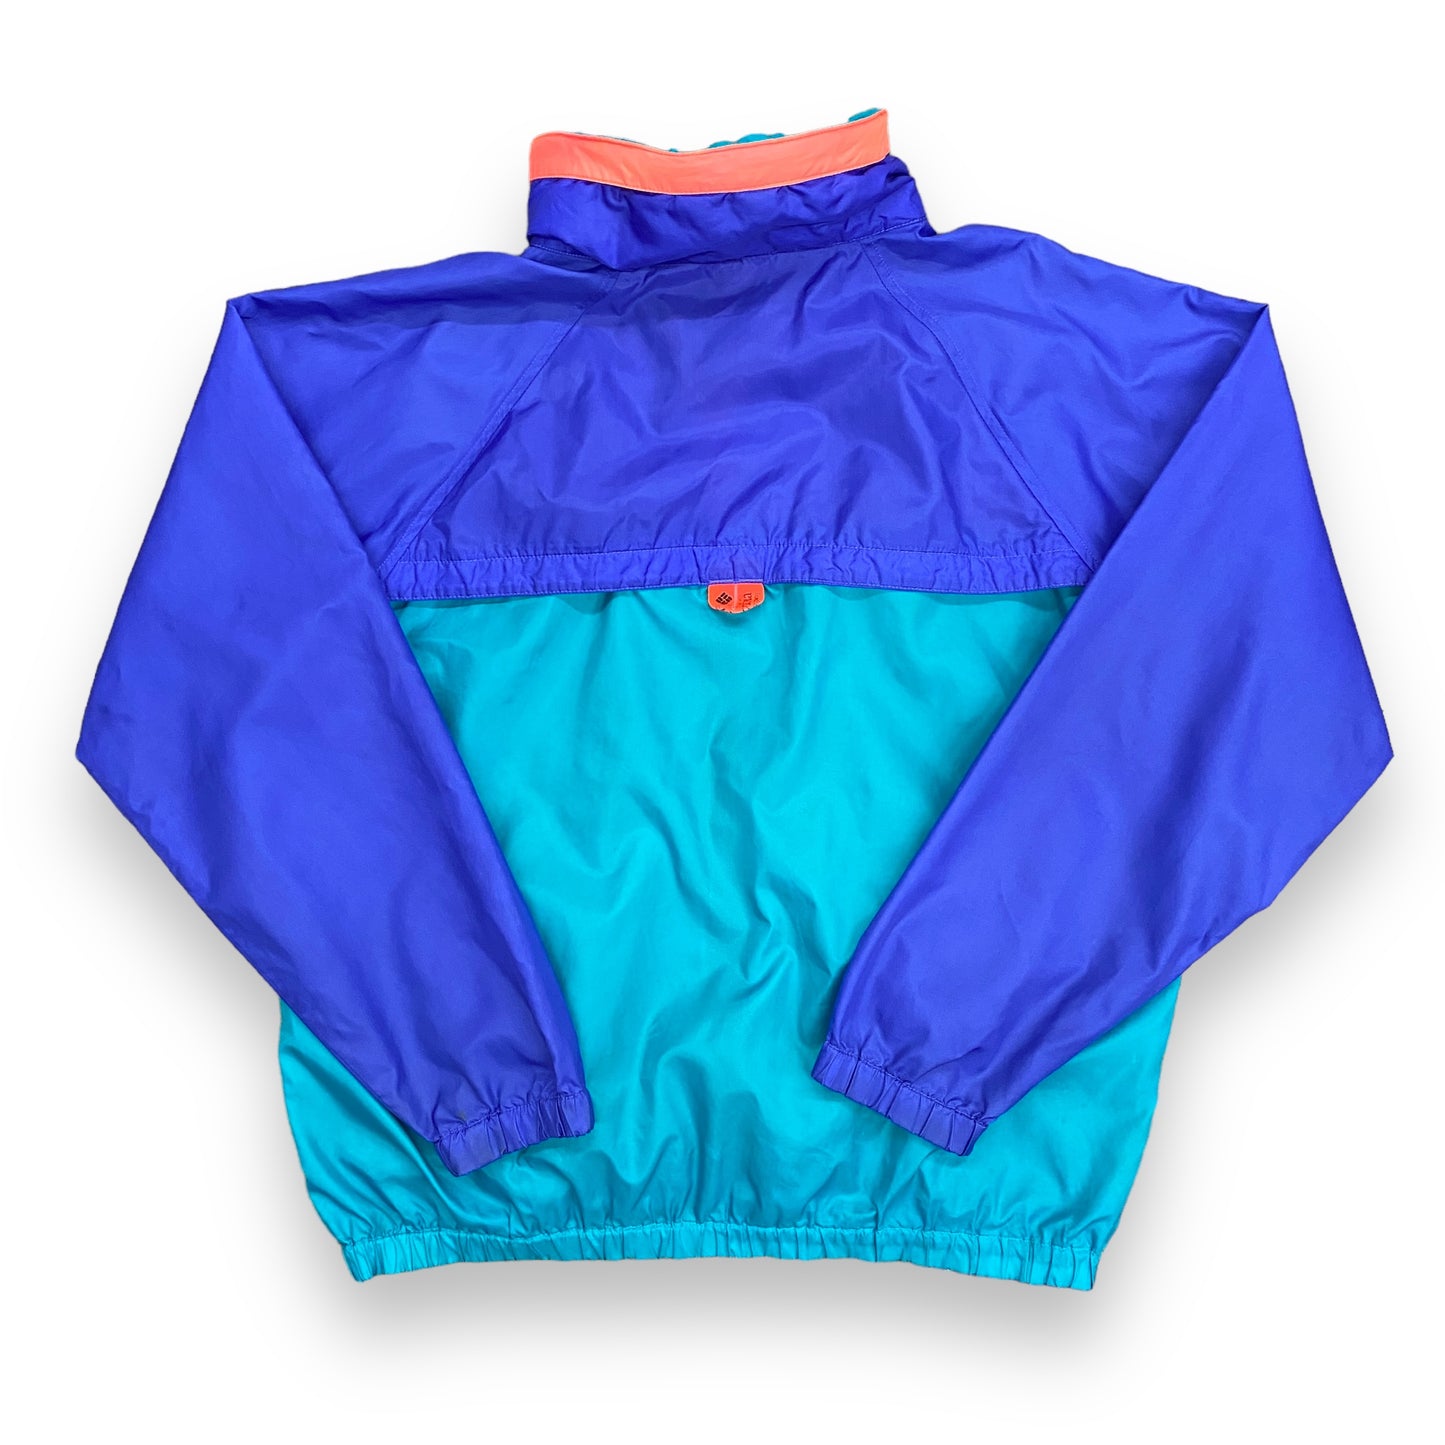 1990s Columbia Sportswear Purple & Teal Windbreaker - Size Large